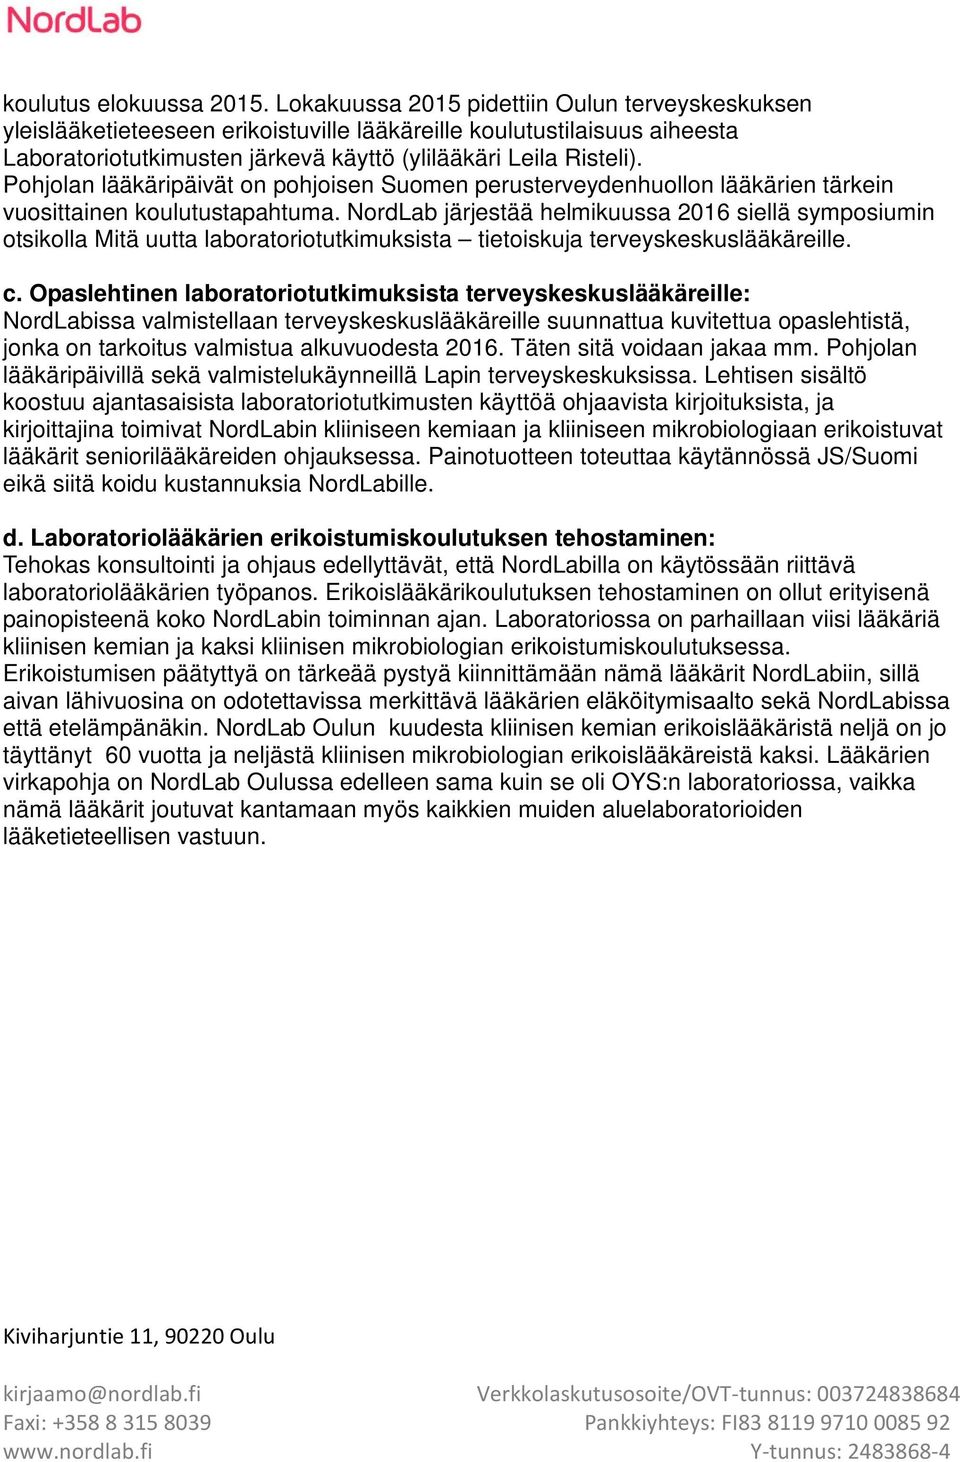 Pohjolan lääkäripäivät on pohjoisen Suomen perusterveydenhuollon lääkärien tärkein vuosittainen koulutustapahtuma.